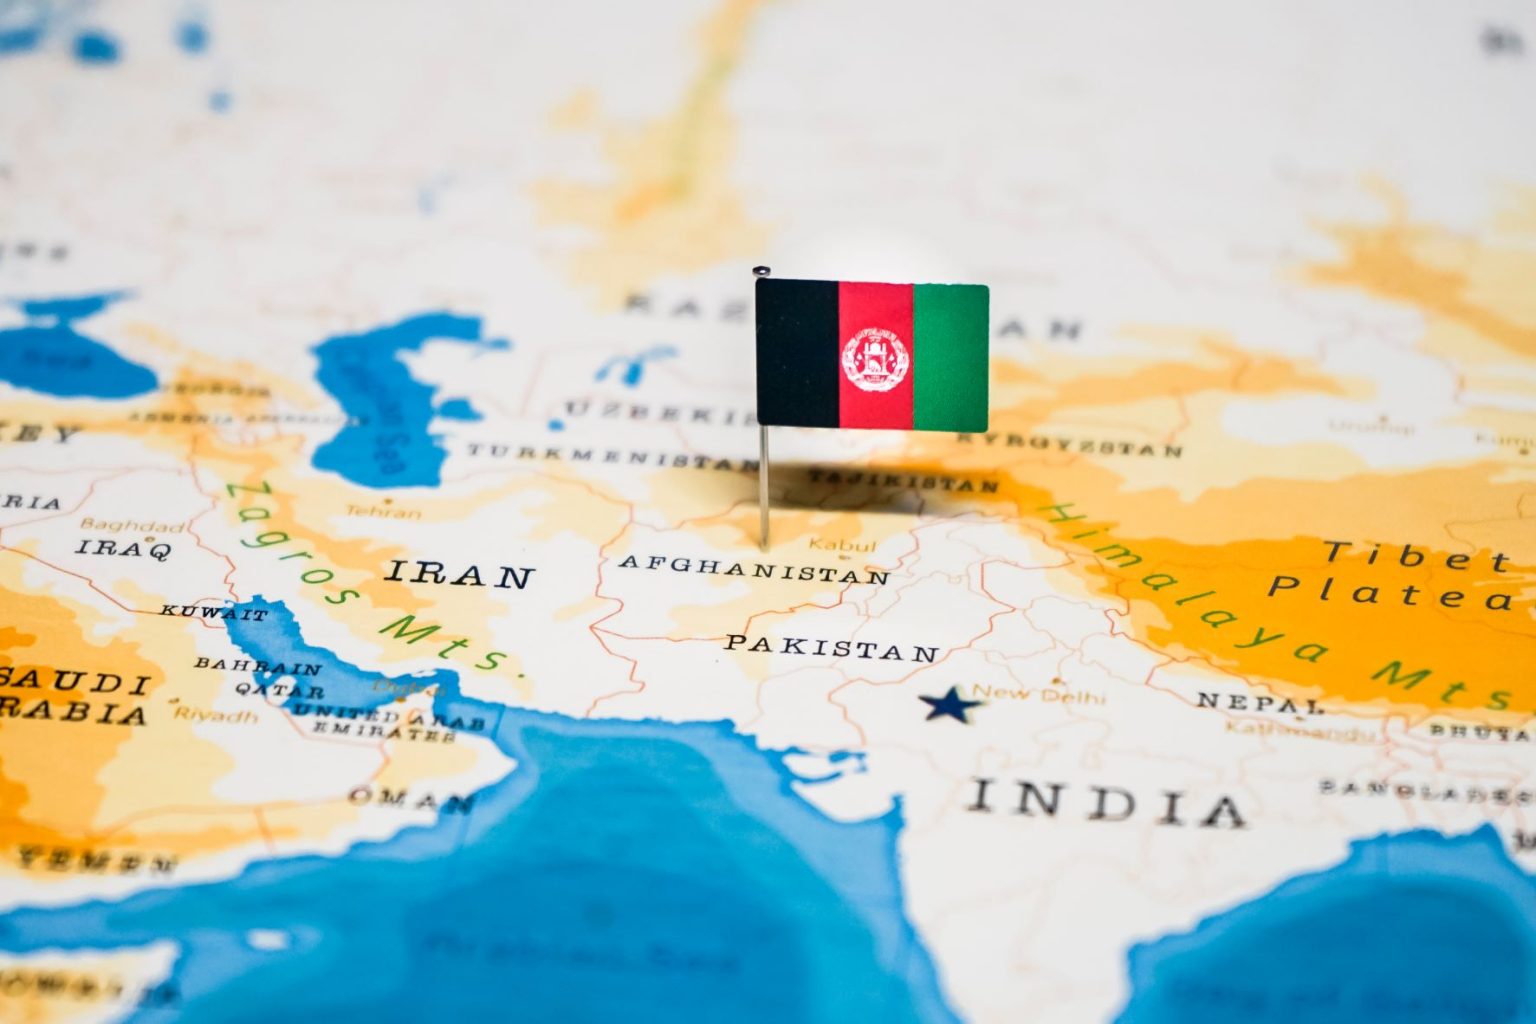 ترکمنستان به اتحادیه اروپا پیشنهاد استفاده از پتانسیل ترانزیتی افغانستان را داد